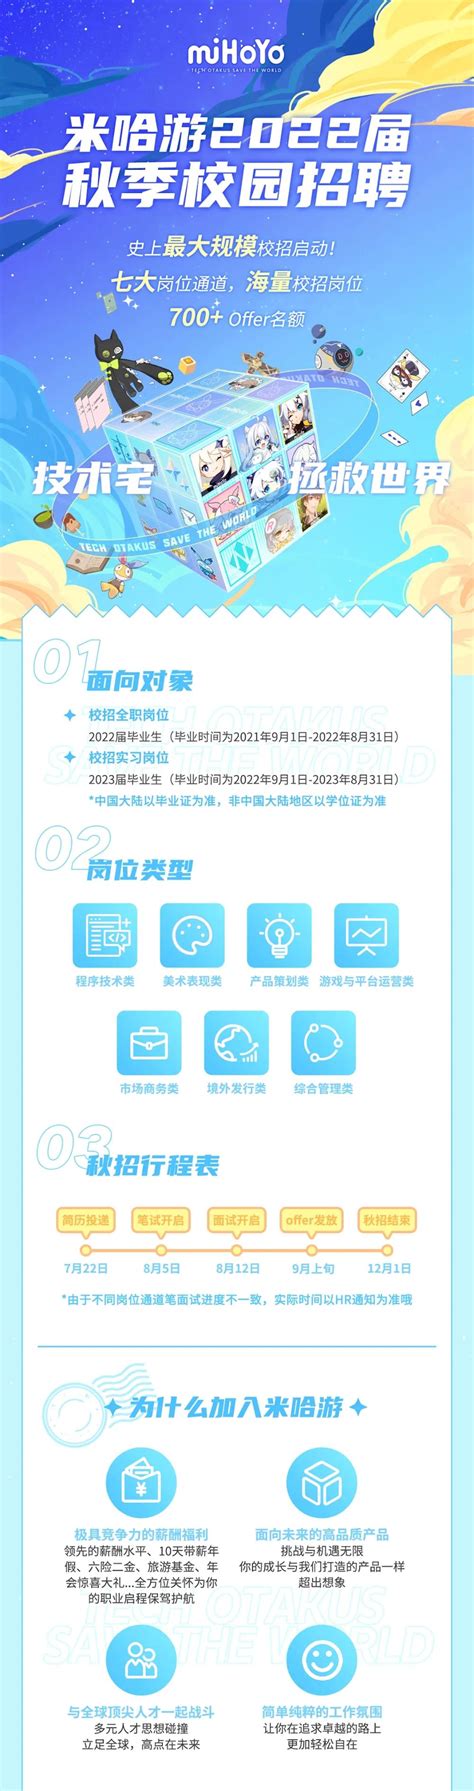 上海米哈游网络科技股份有限公司2020校园招聘_上海校园招聘